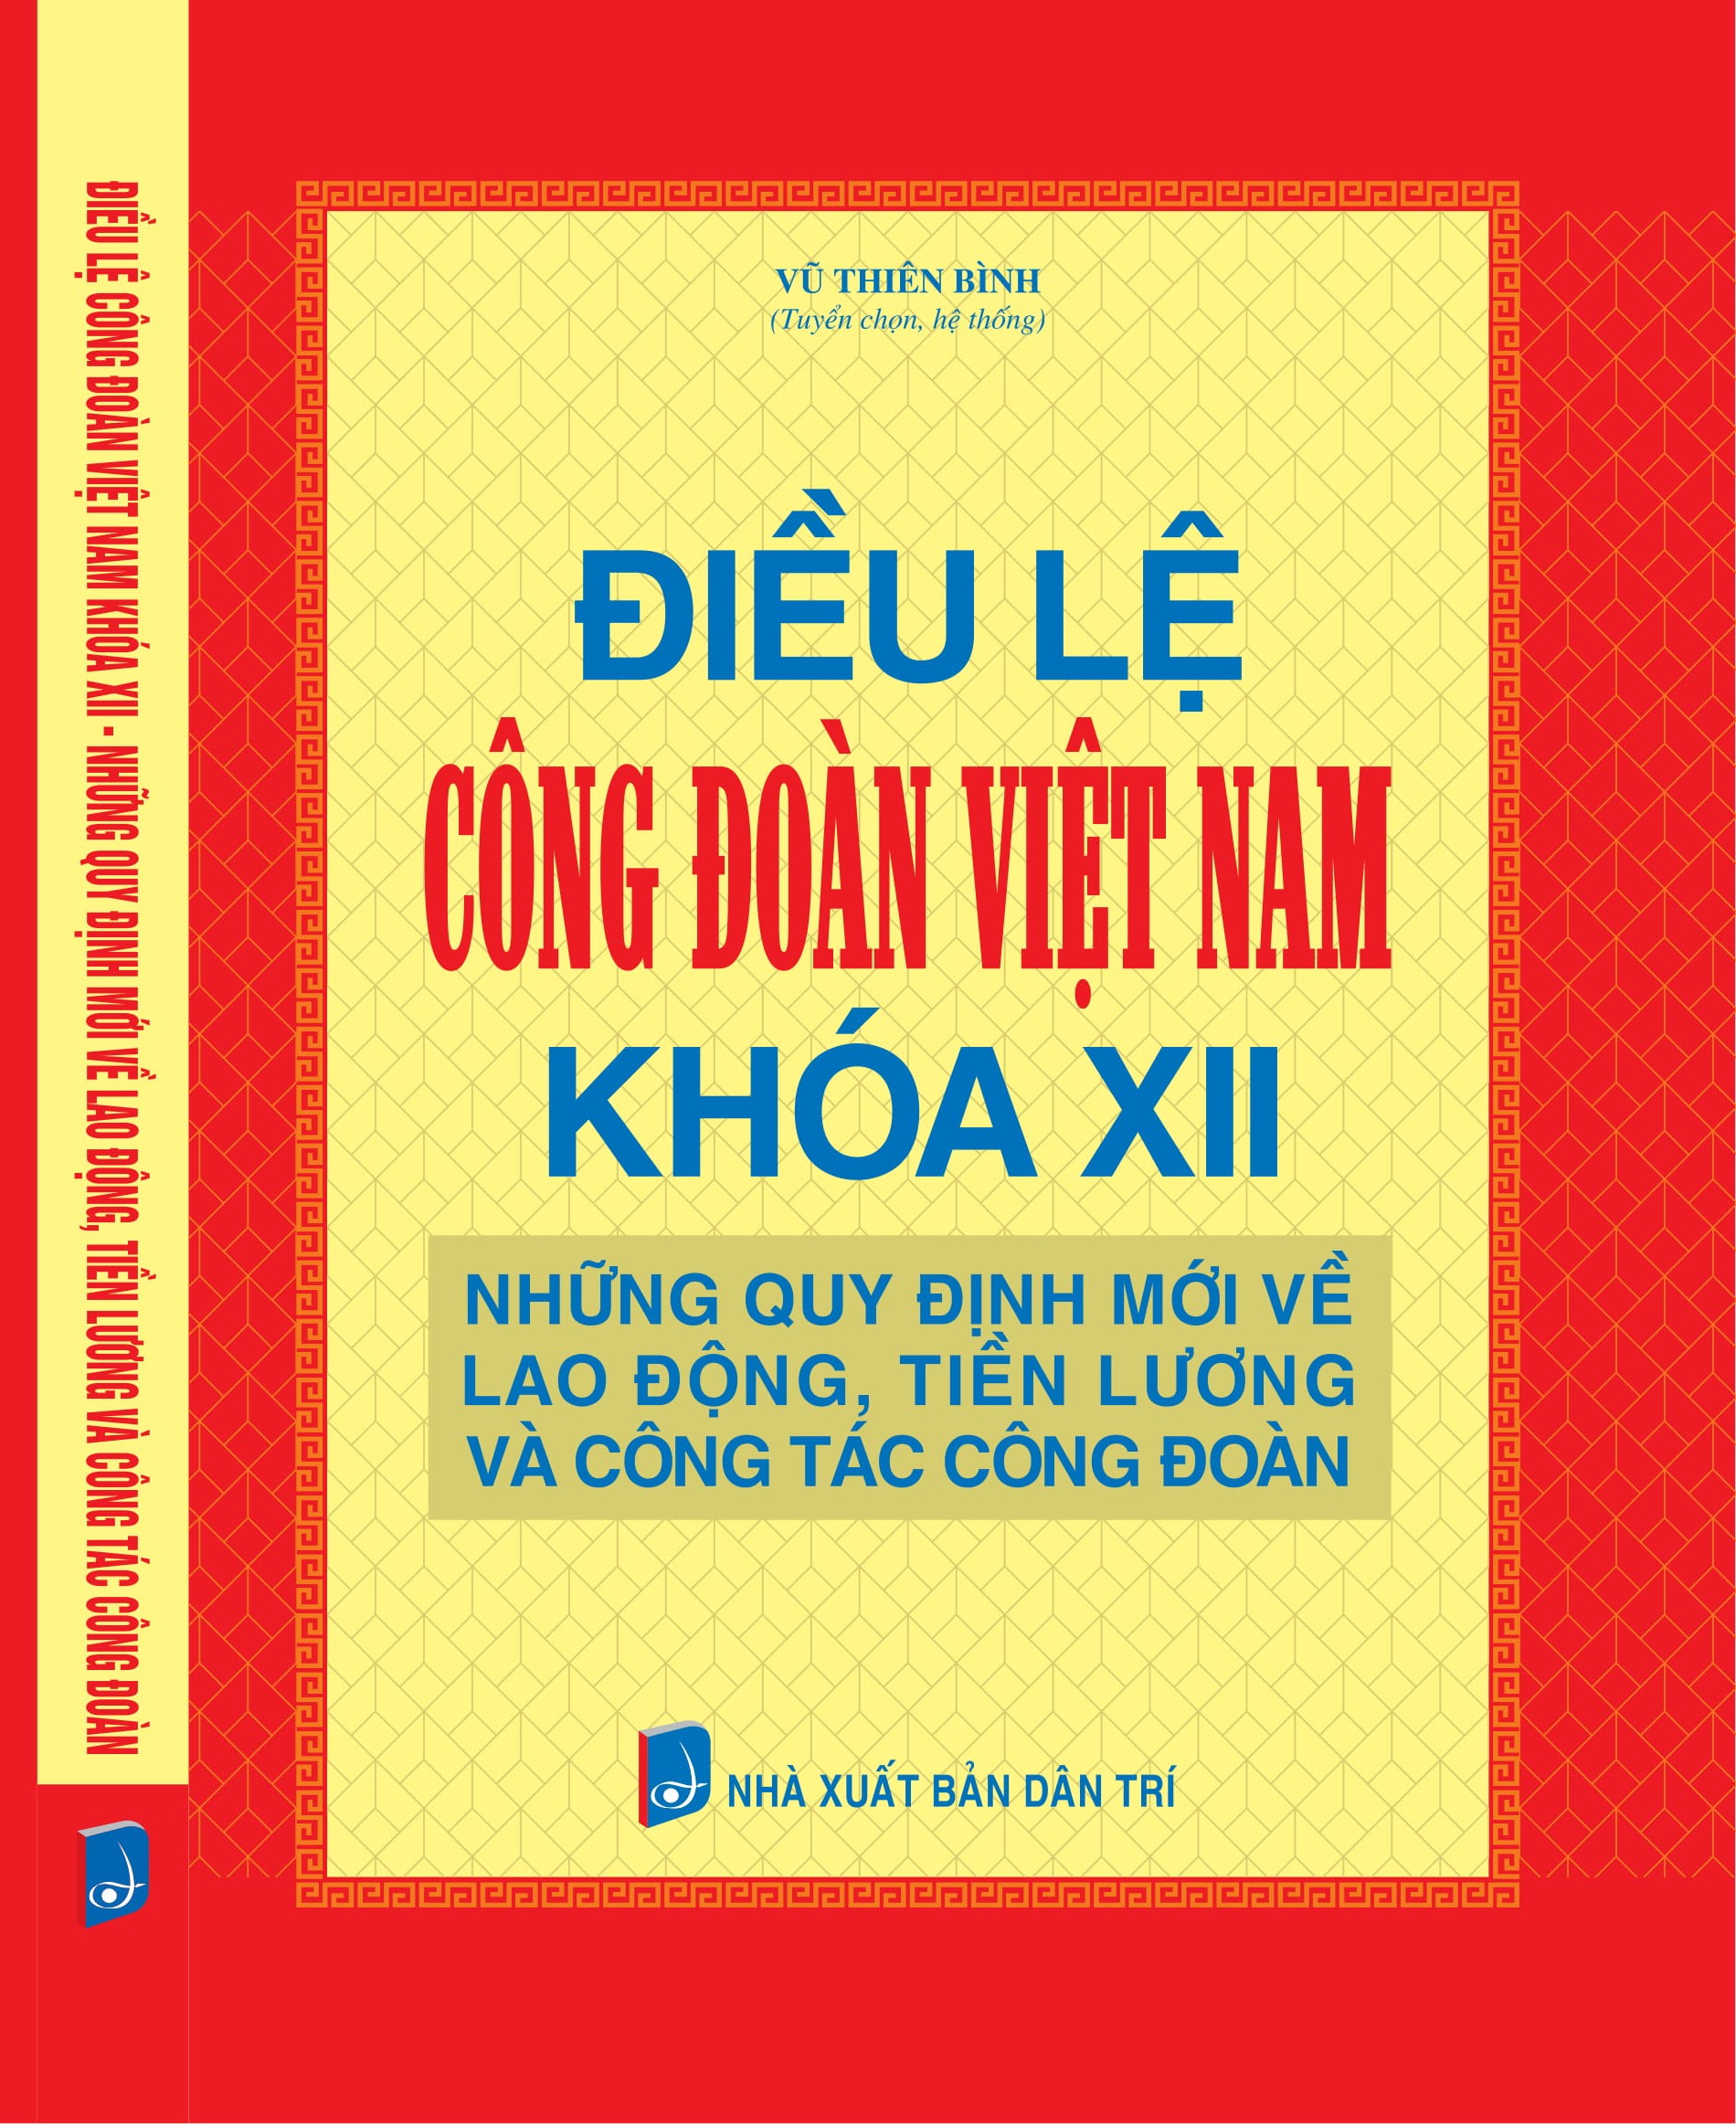 Điều lệ Công đoàn Việt Nam khóa XII - Những quy định mới về lao động, tiền lương và công tác công đo